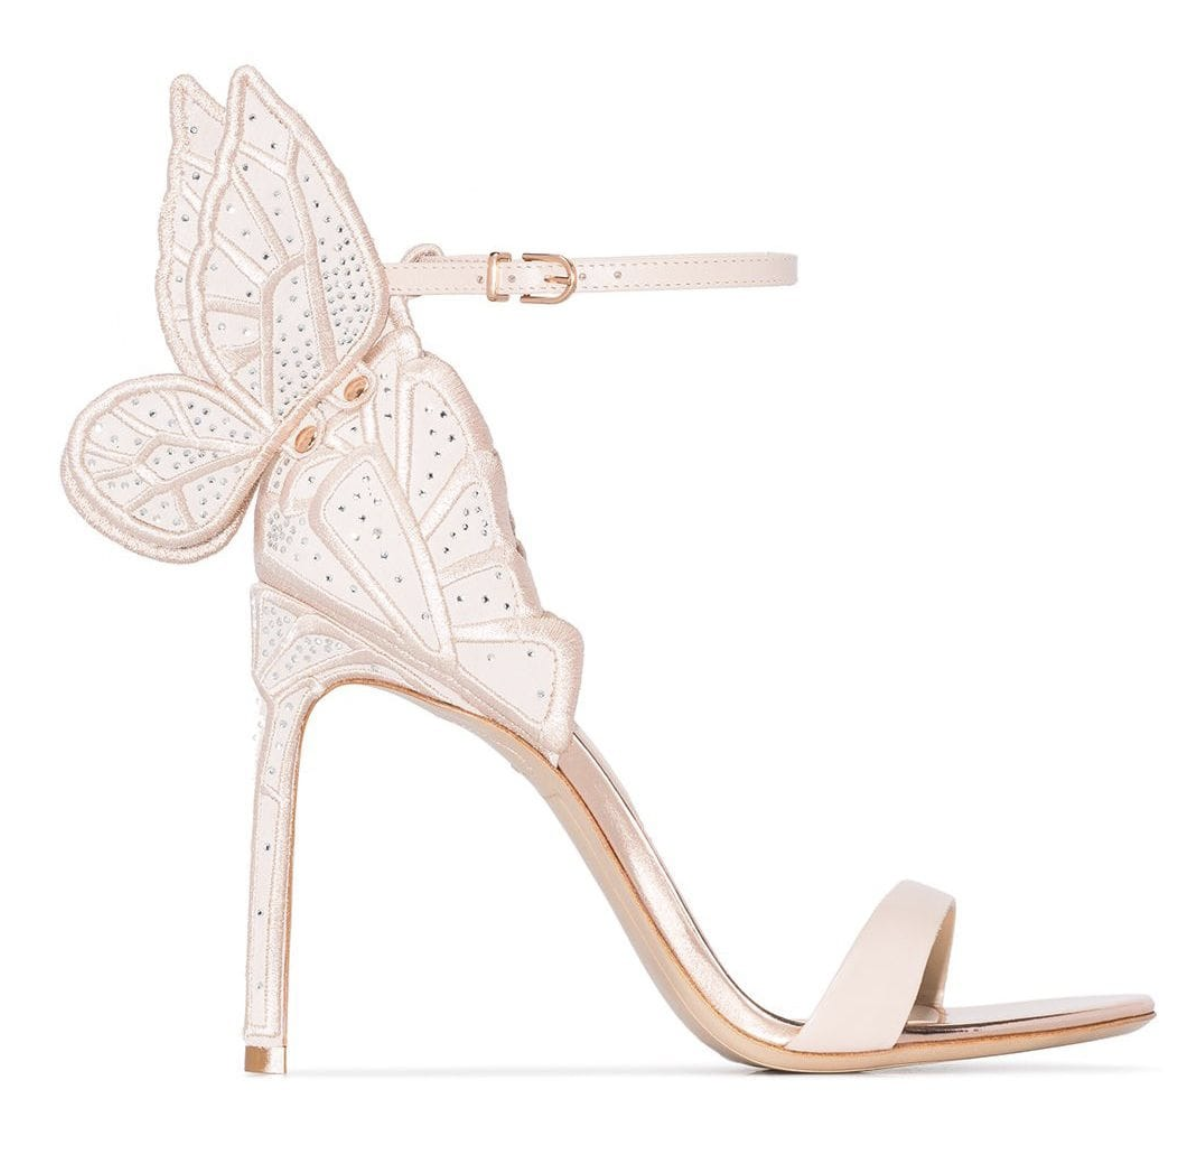 Sophia Webster Chiara butterfly sandals